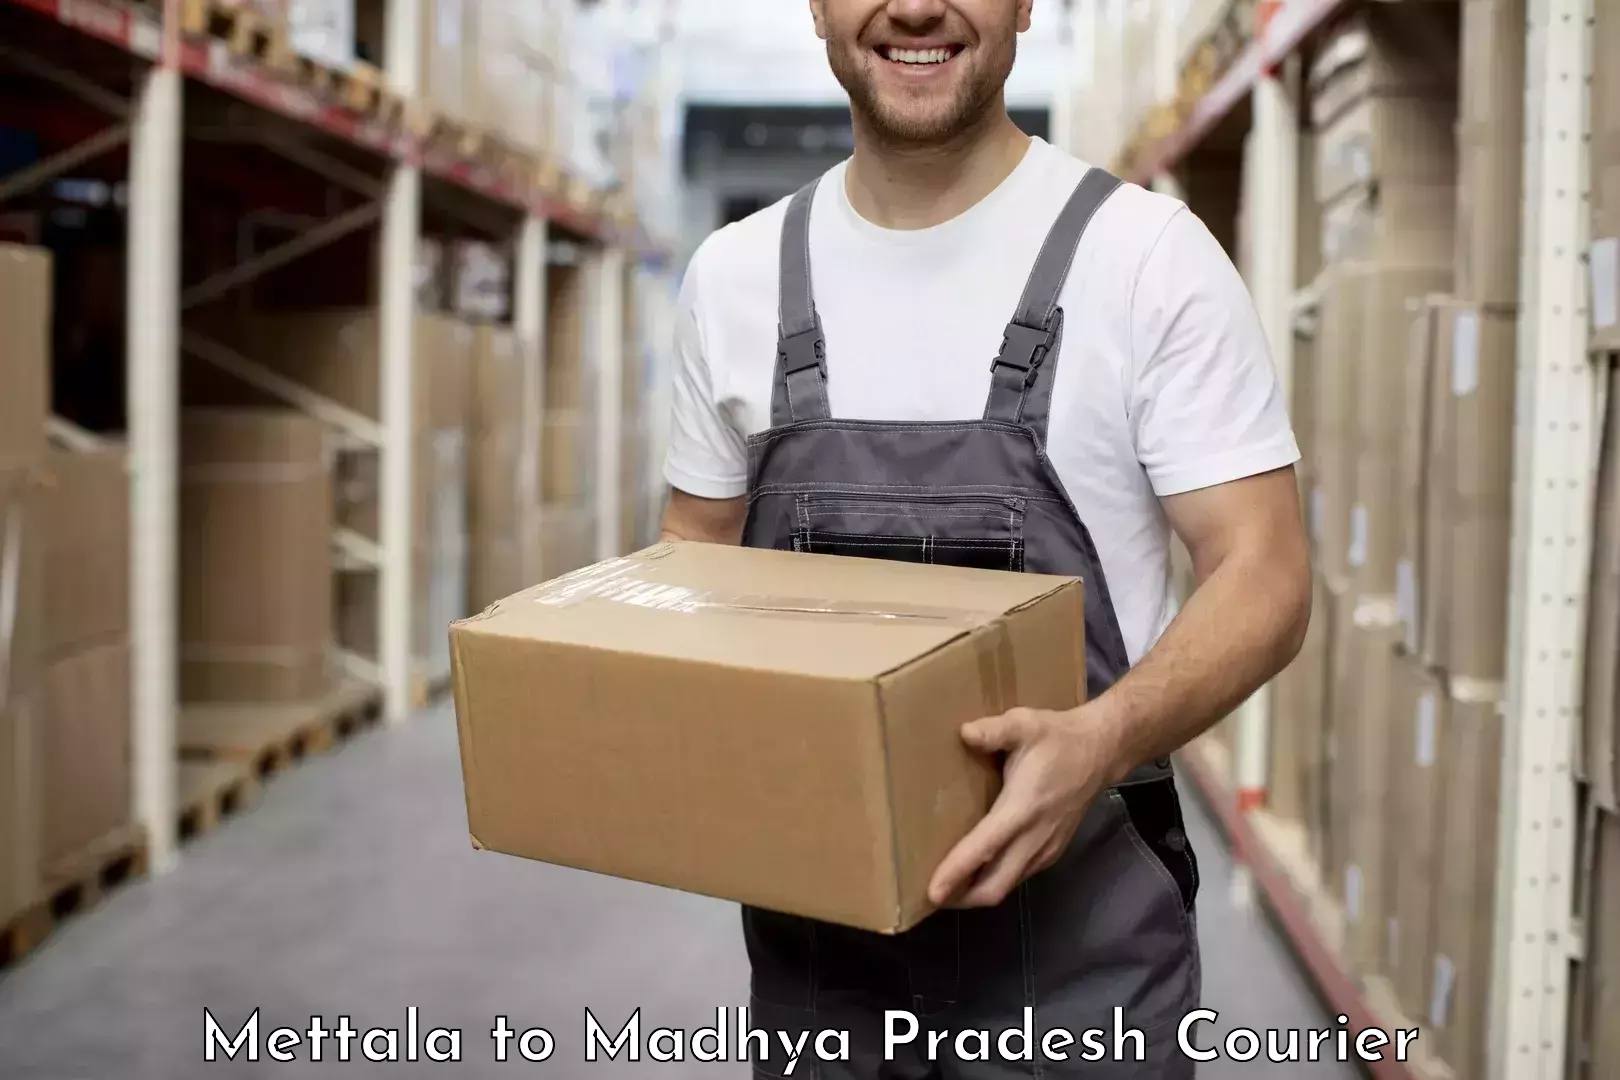 Digital courier platforms Mettala to Rahatgarh